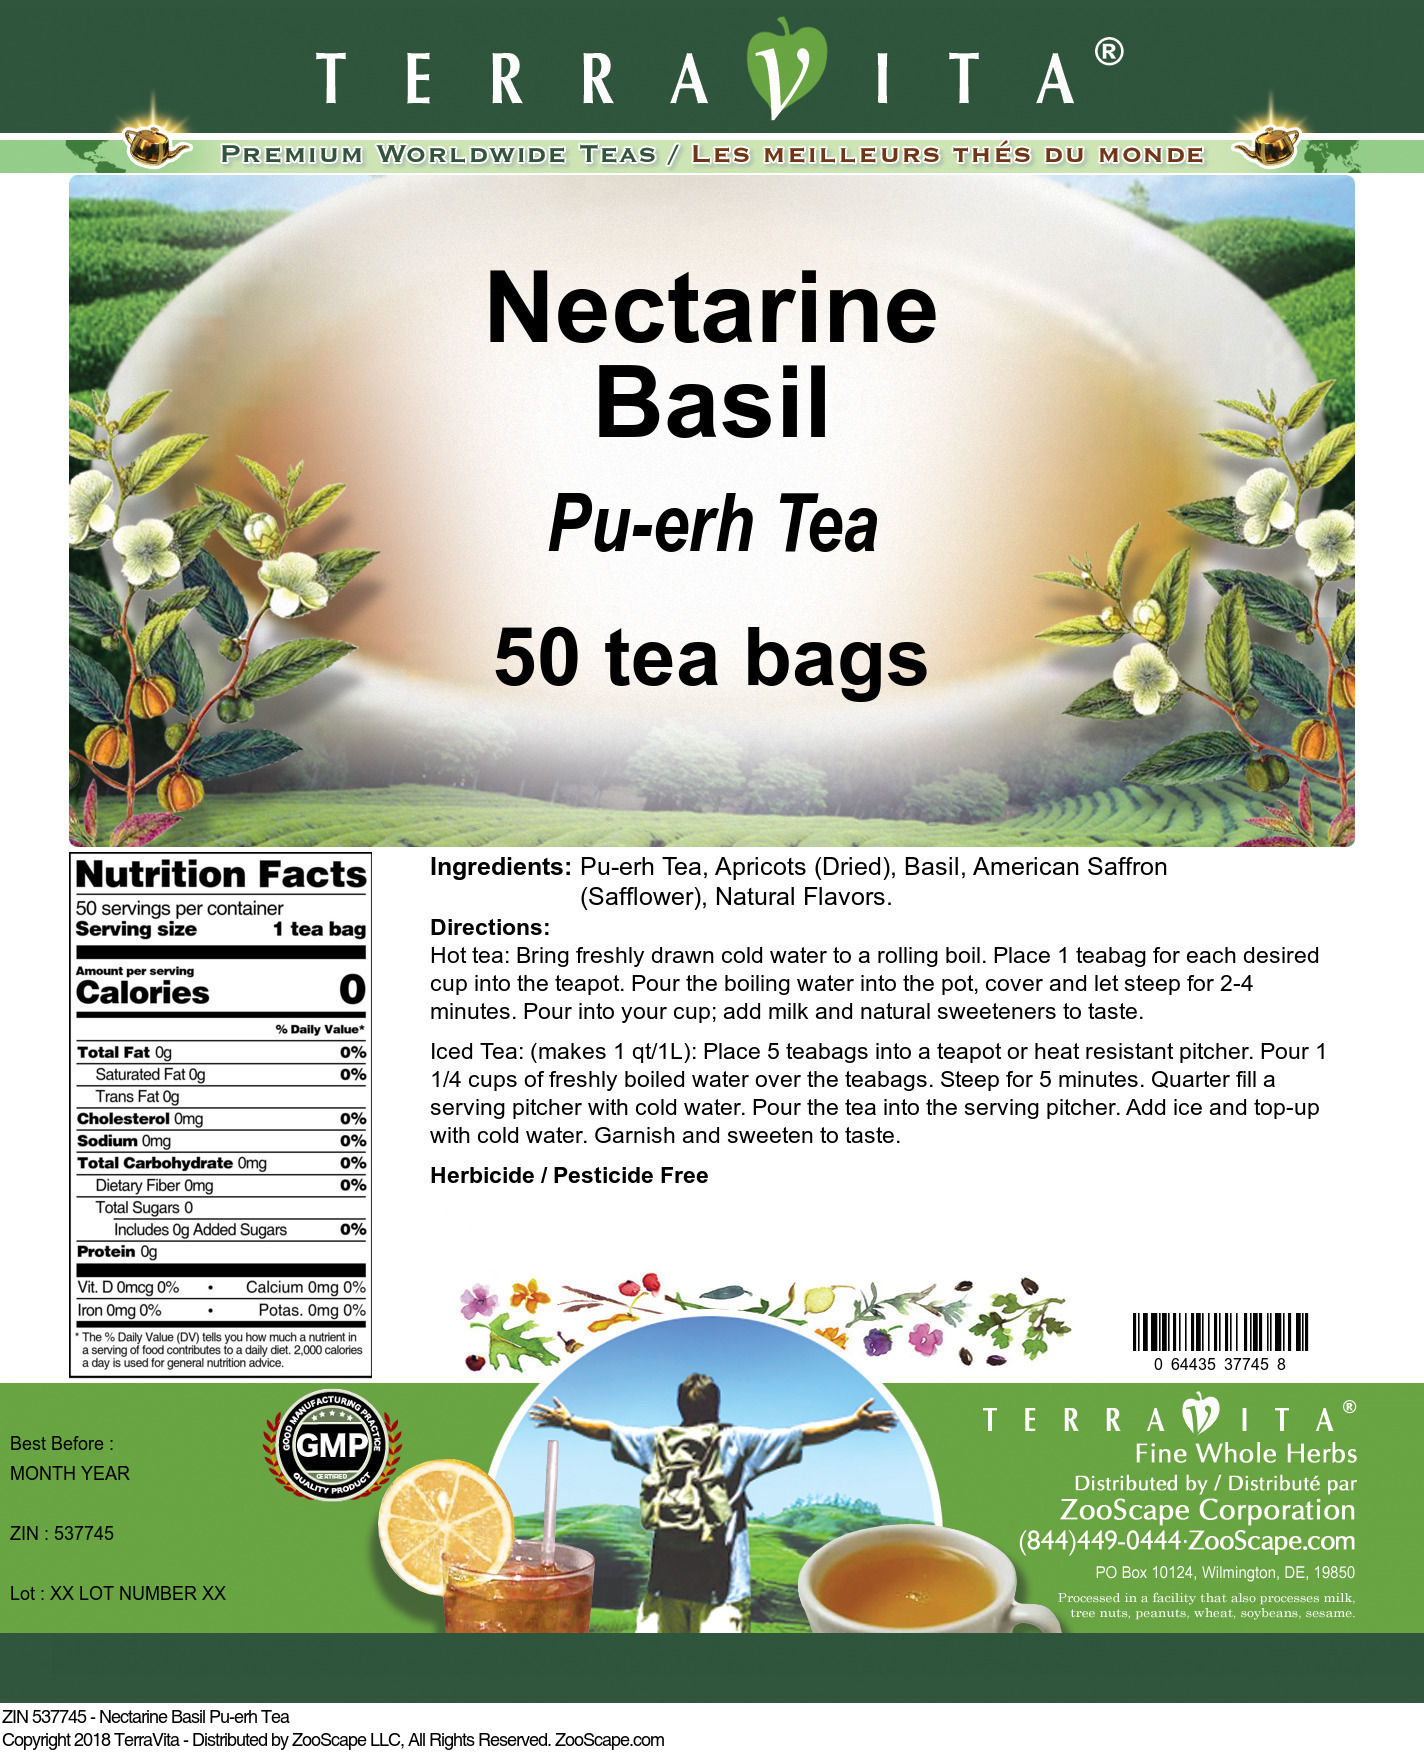 Nectarine Basil Pu-erh Tea - Label